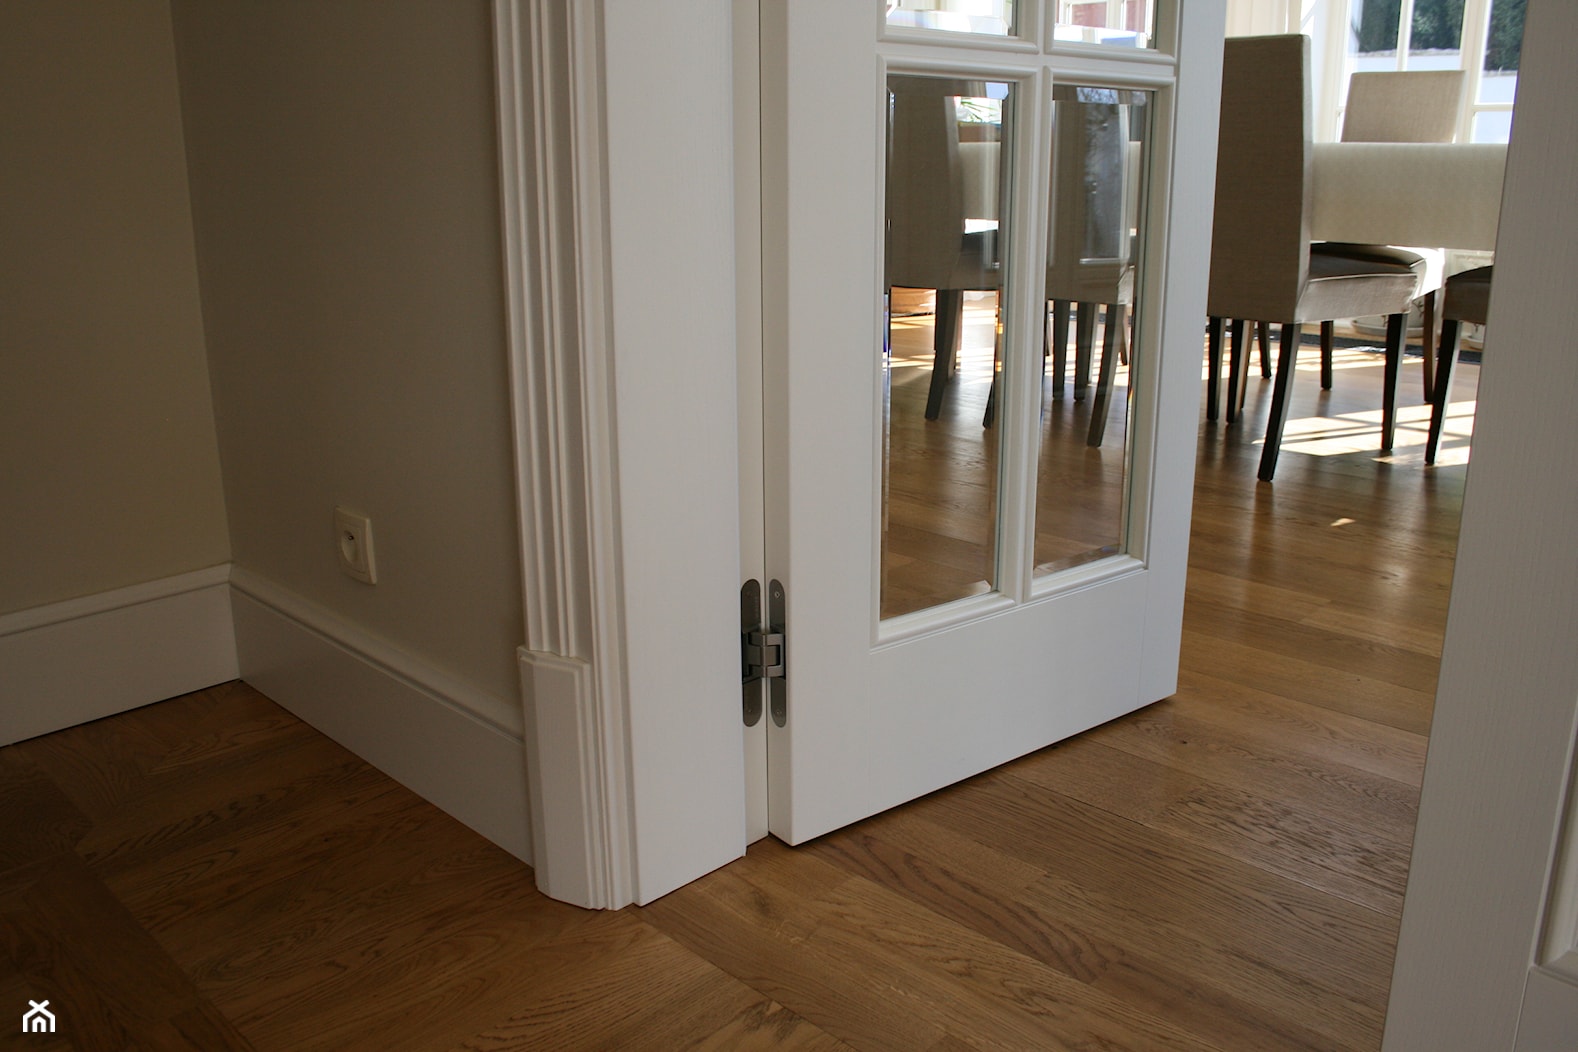 Stylowe przeszklone drzwi drewniane - detal - zdjęcie od Drzwi doorlux_pl - Homebook